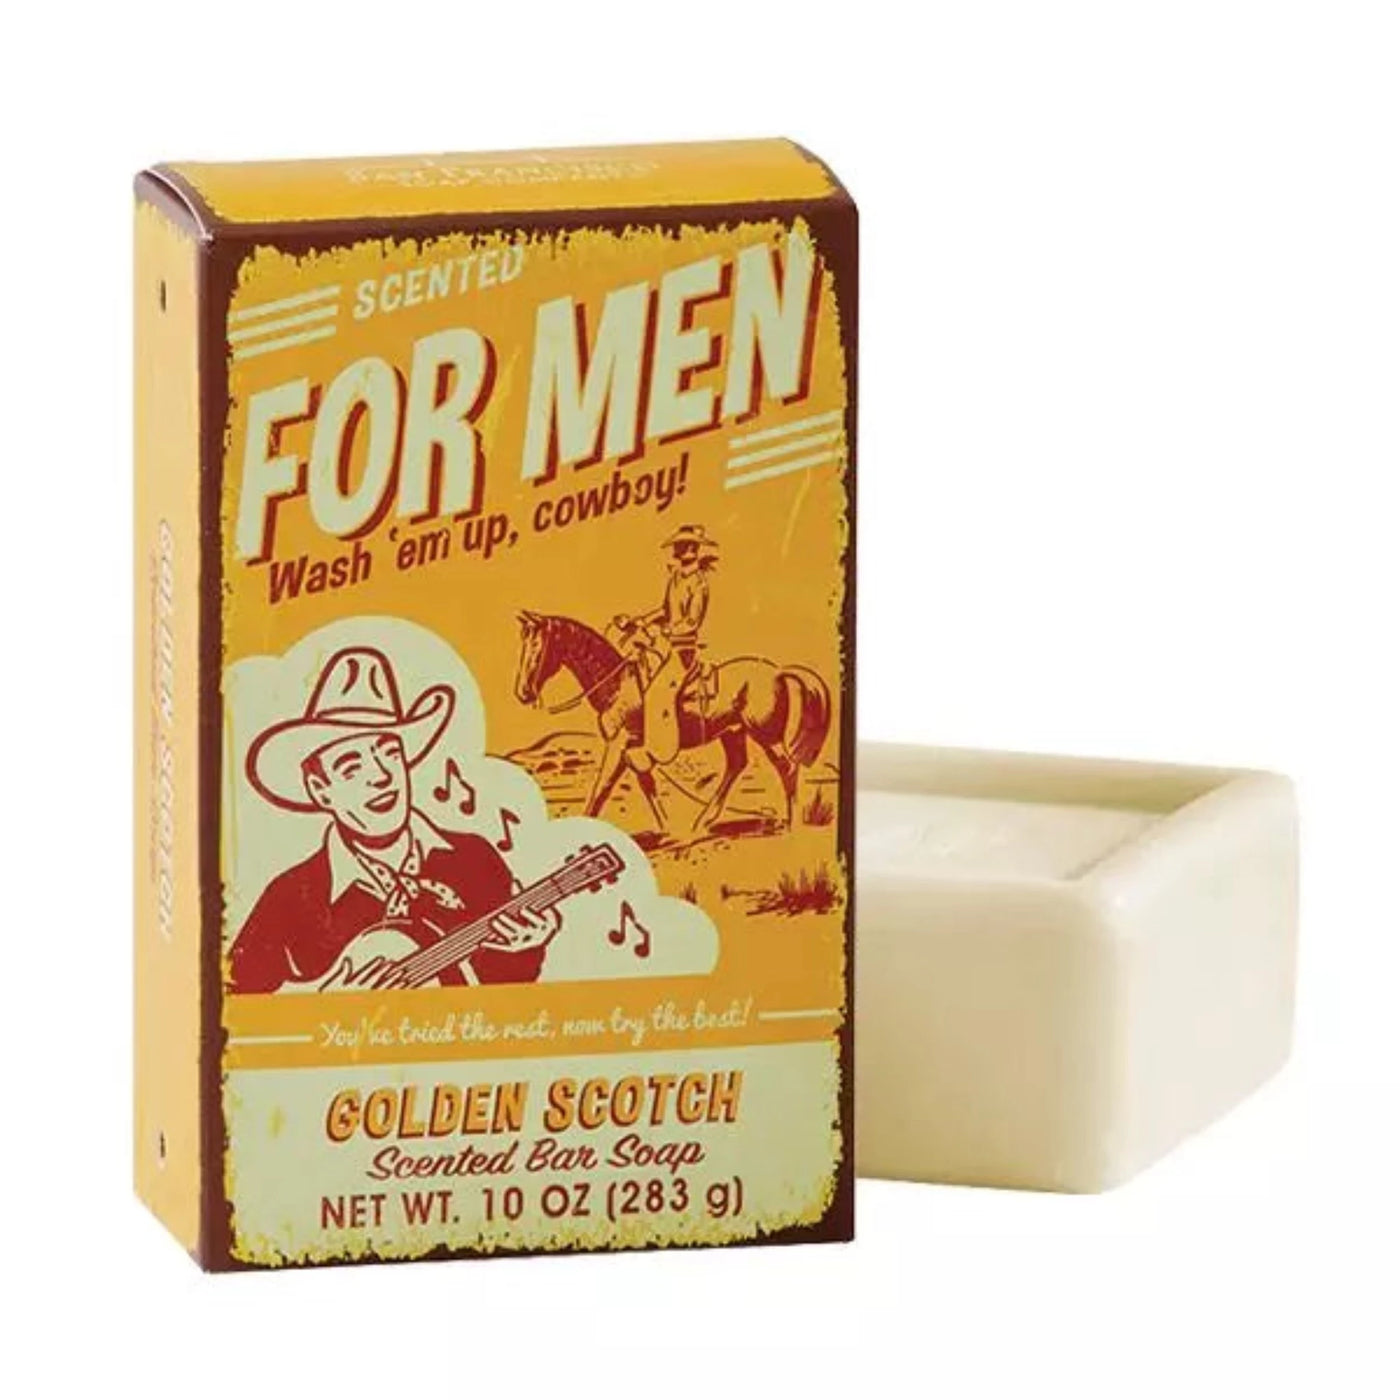 Golden Scotch Men's Bar Soap